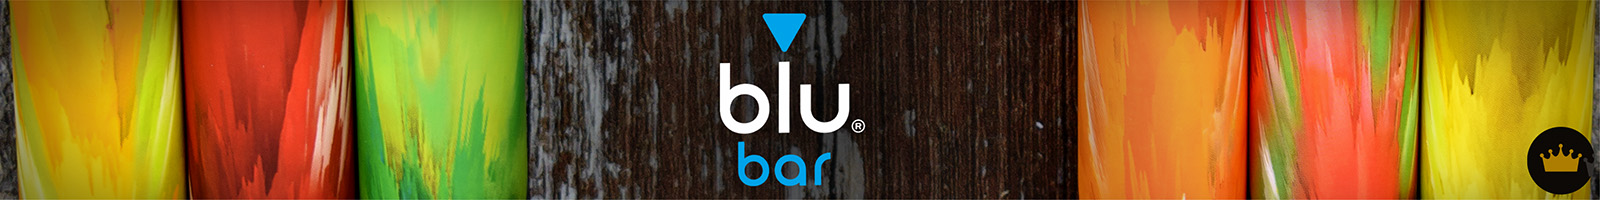 blu bar Vapes